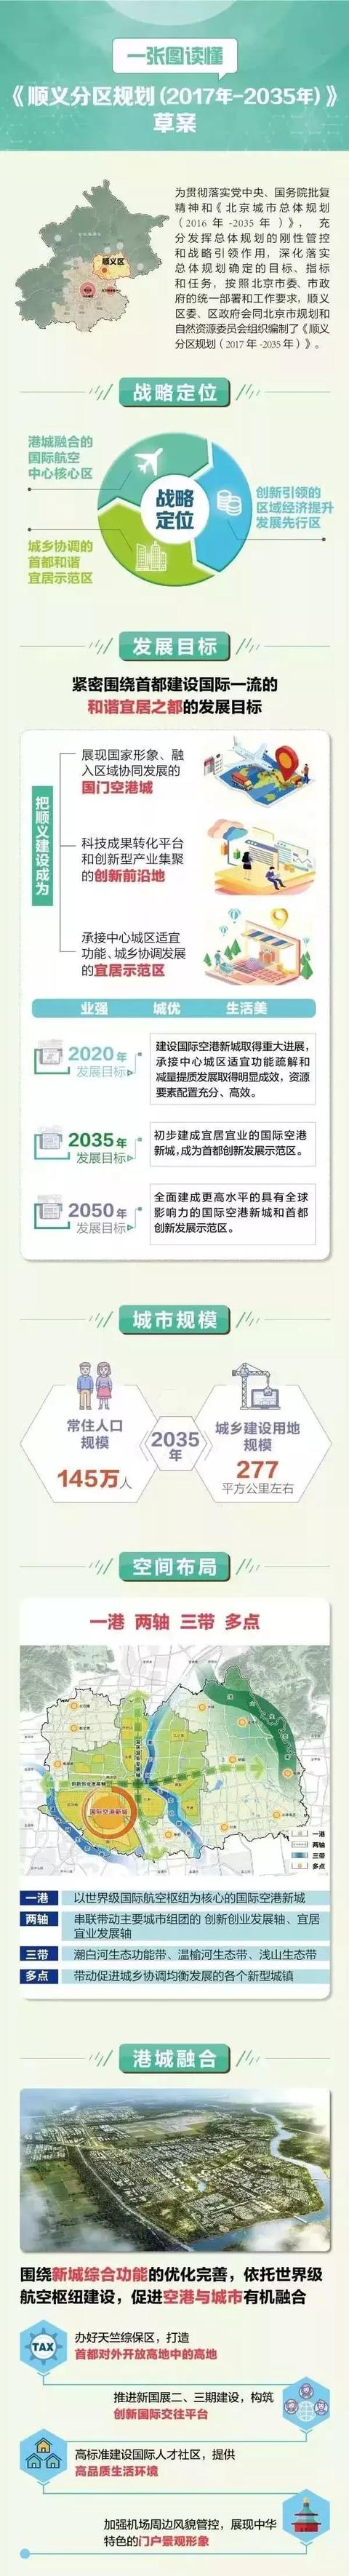 顺义马坡镇2035规划发展